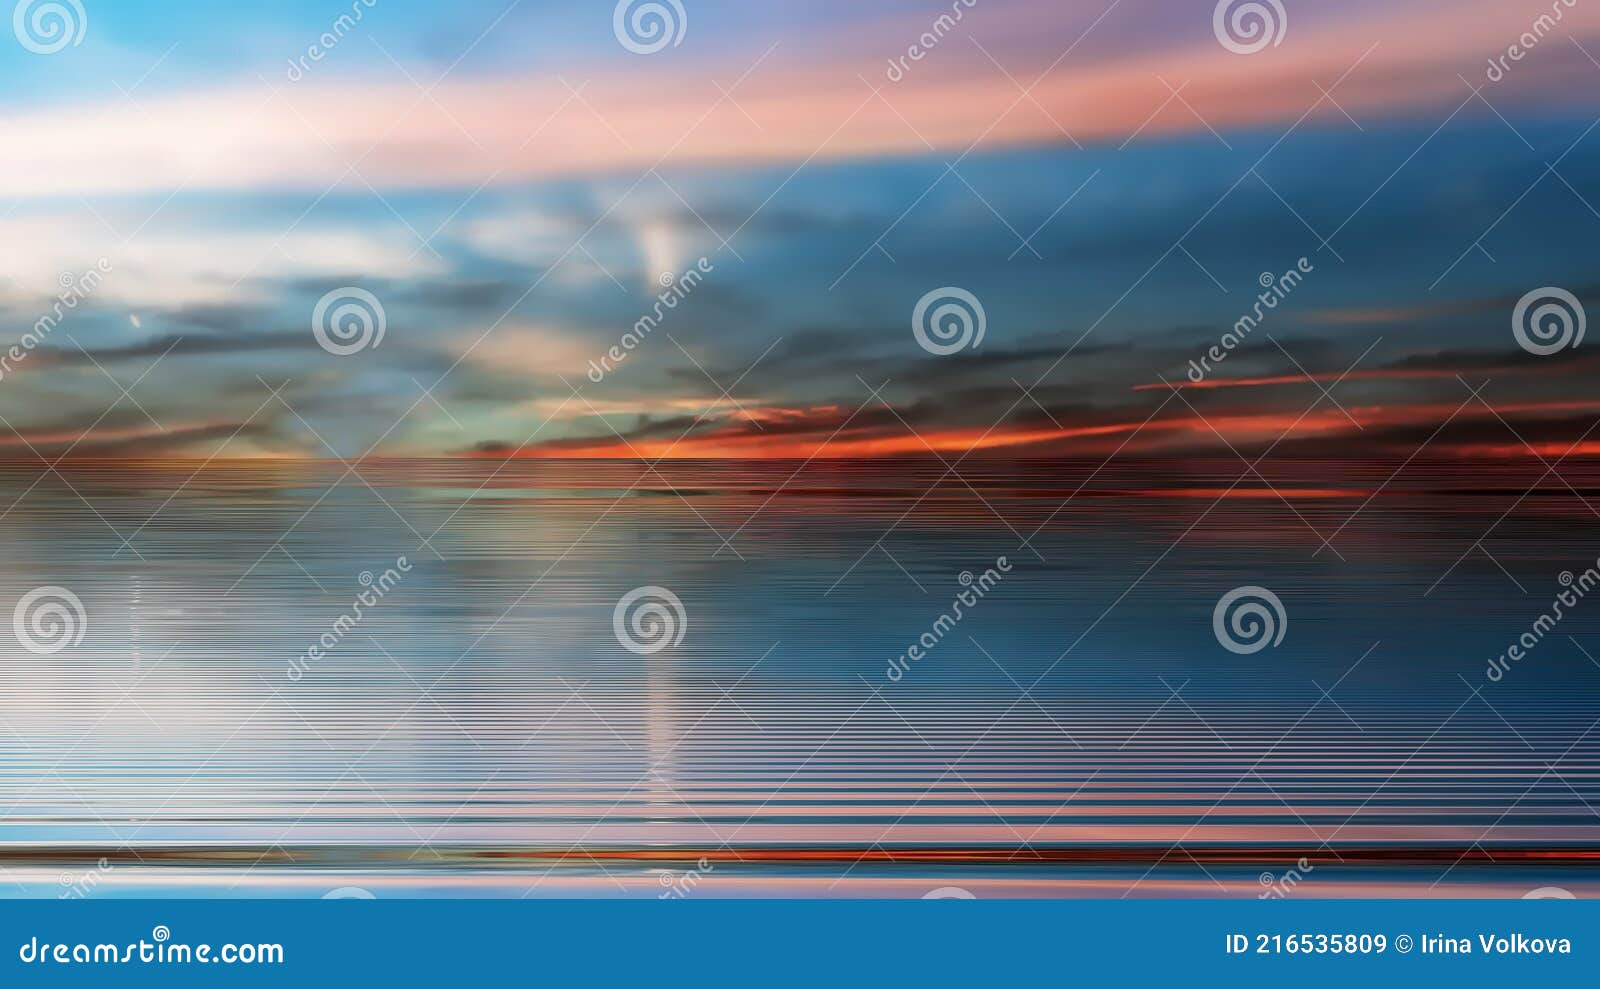 синий драматический закат на море оранжевое золото сиреневый розовый желтый  синий цветные тучи отражение на воде волна драматическ Иллюстрация штока -  иллюстрации насчитывающей красивейшее, лето: 216535809